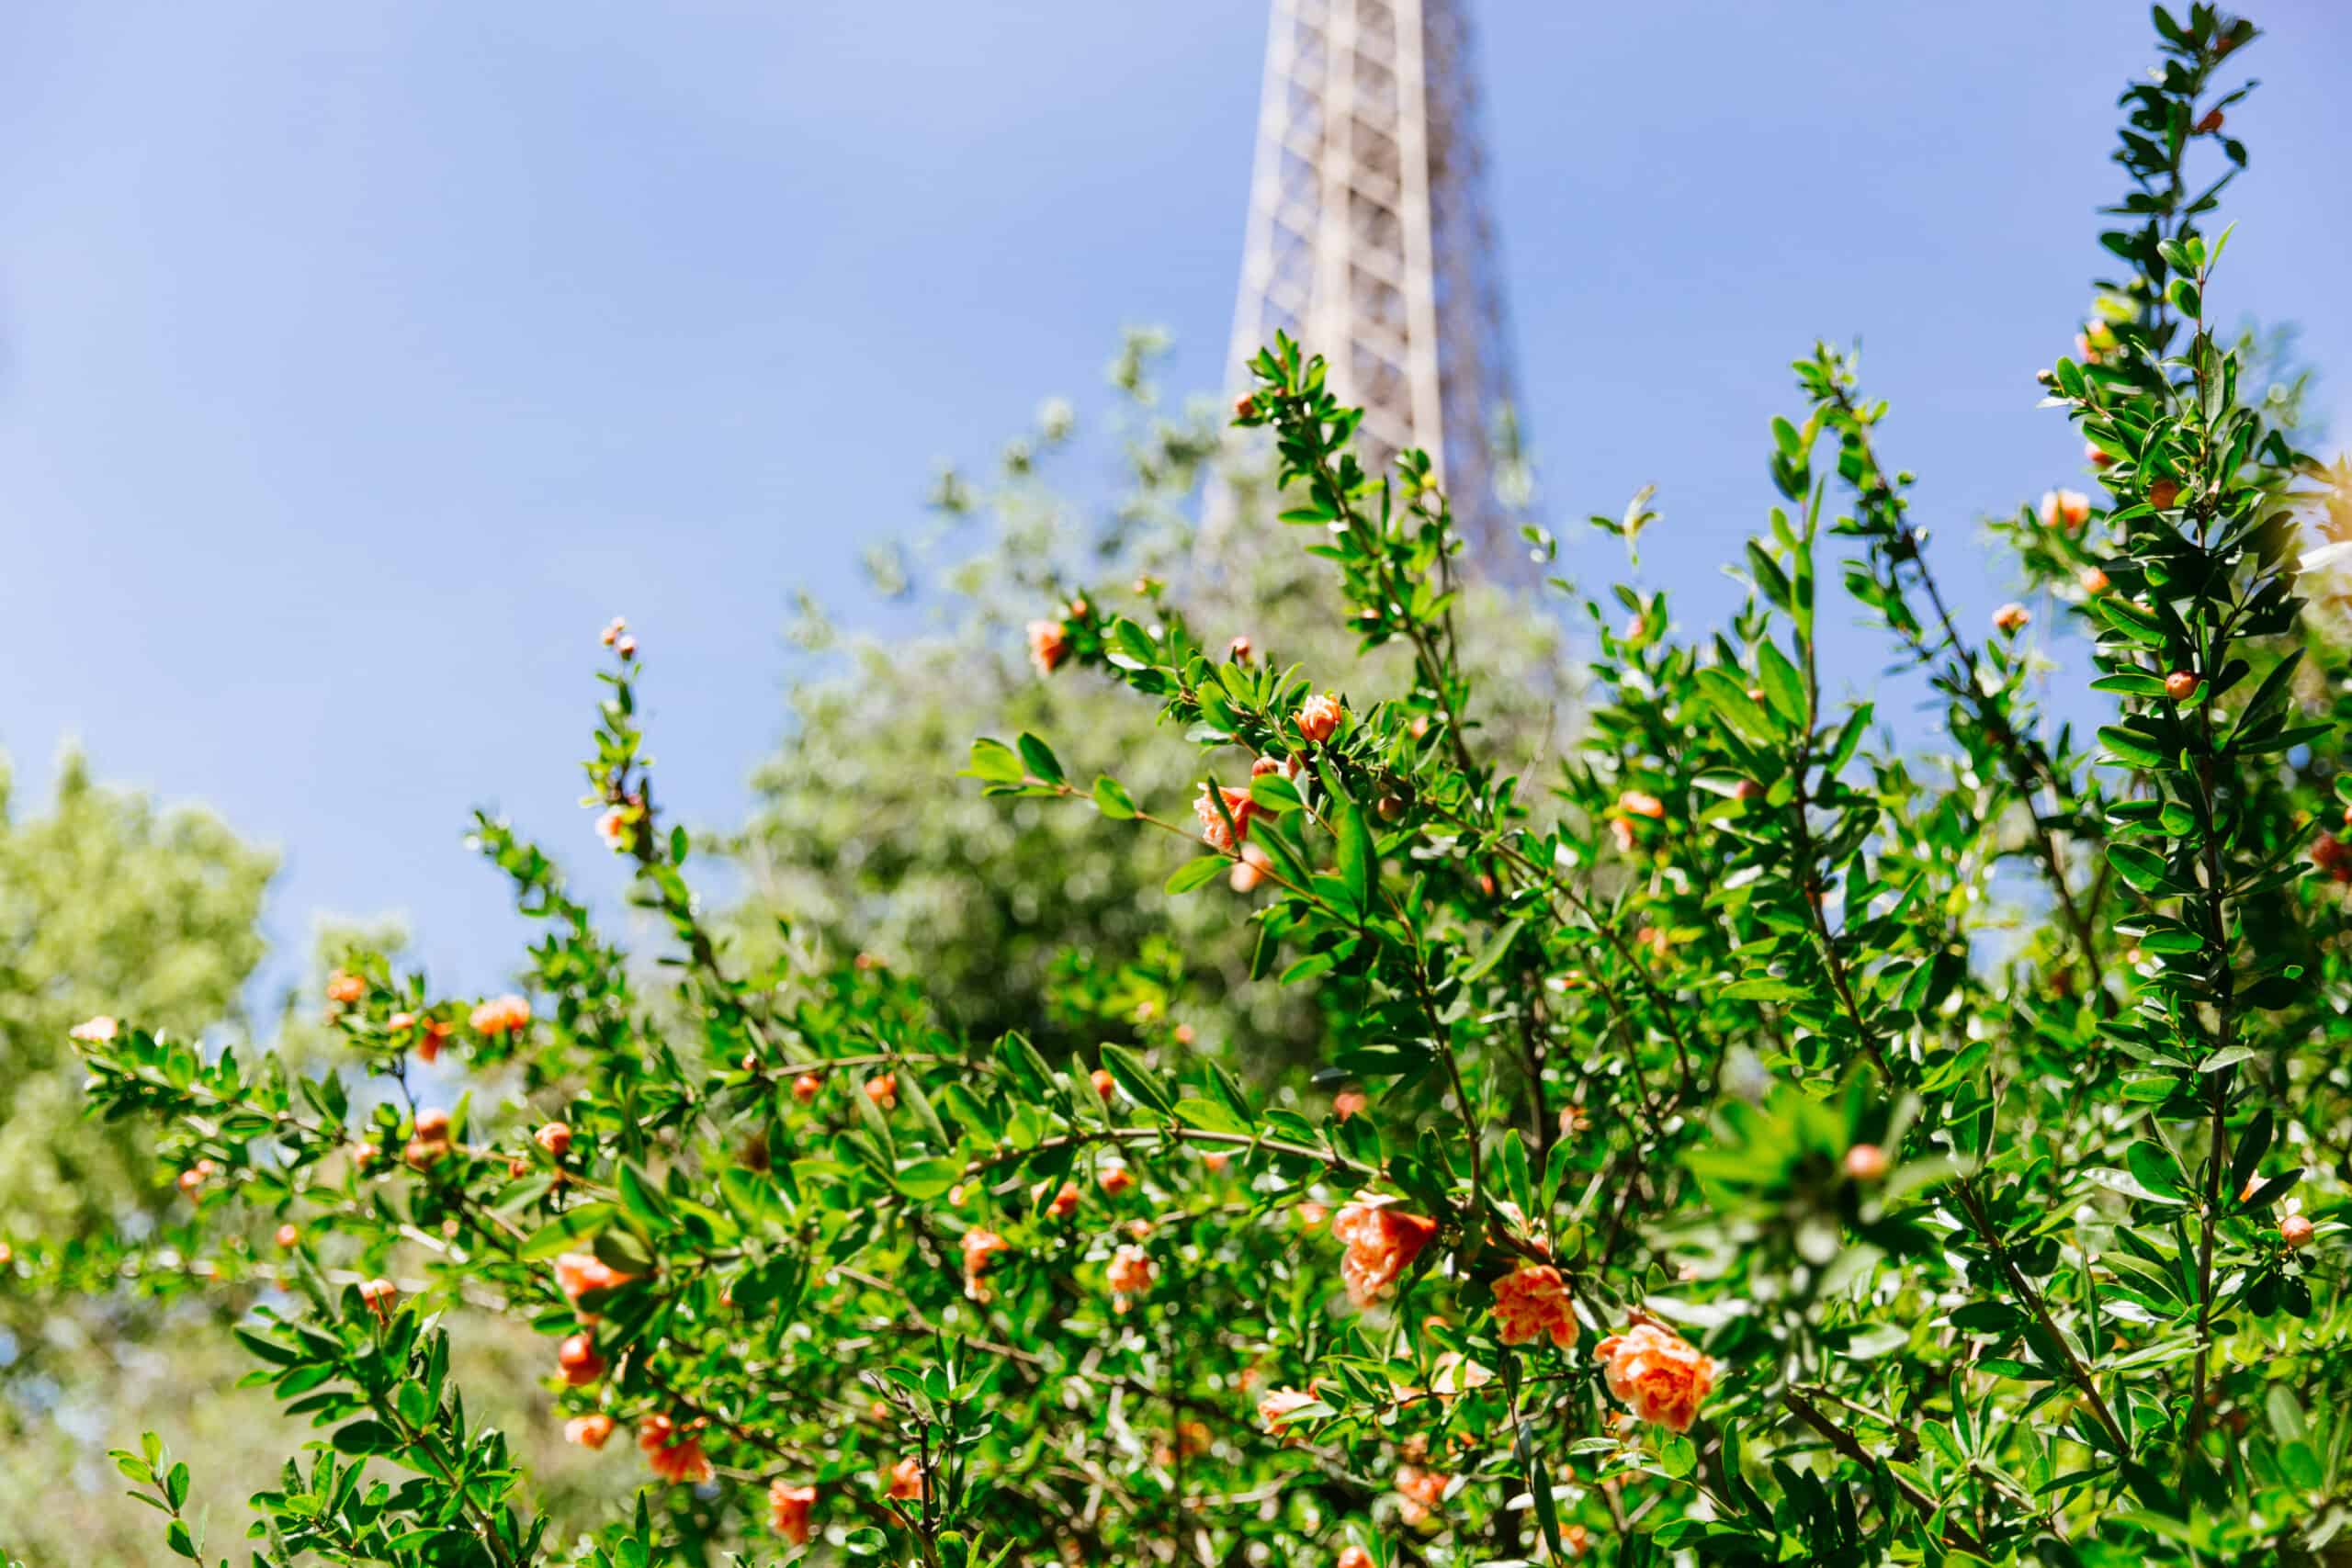 La Tour Eiffel in Paris, France